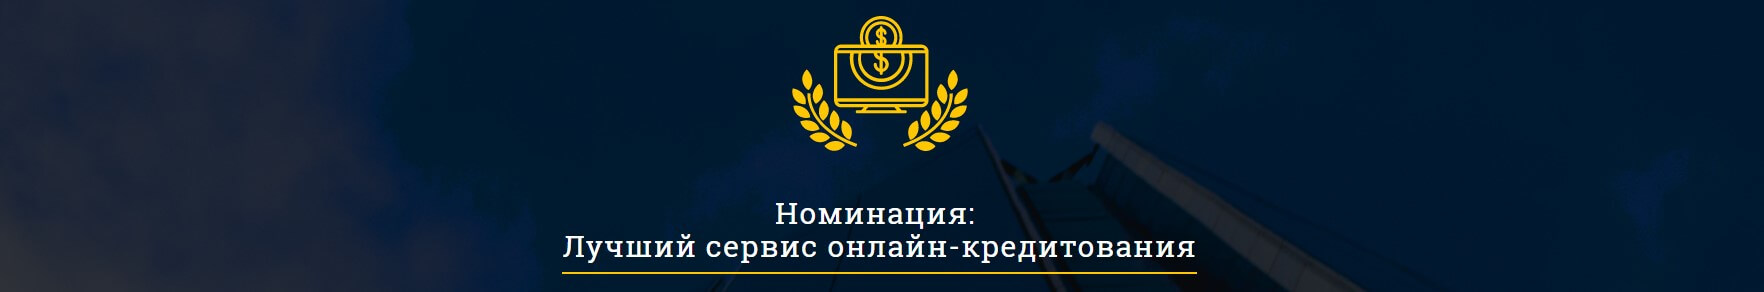 Moneyveo признали лучшим сервисом онлайн-кредитования в Украине